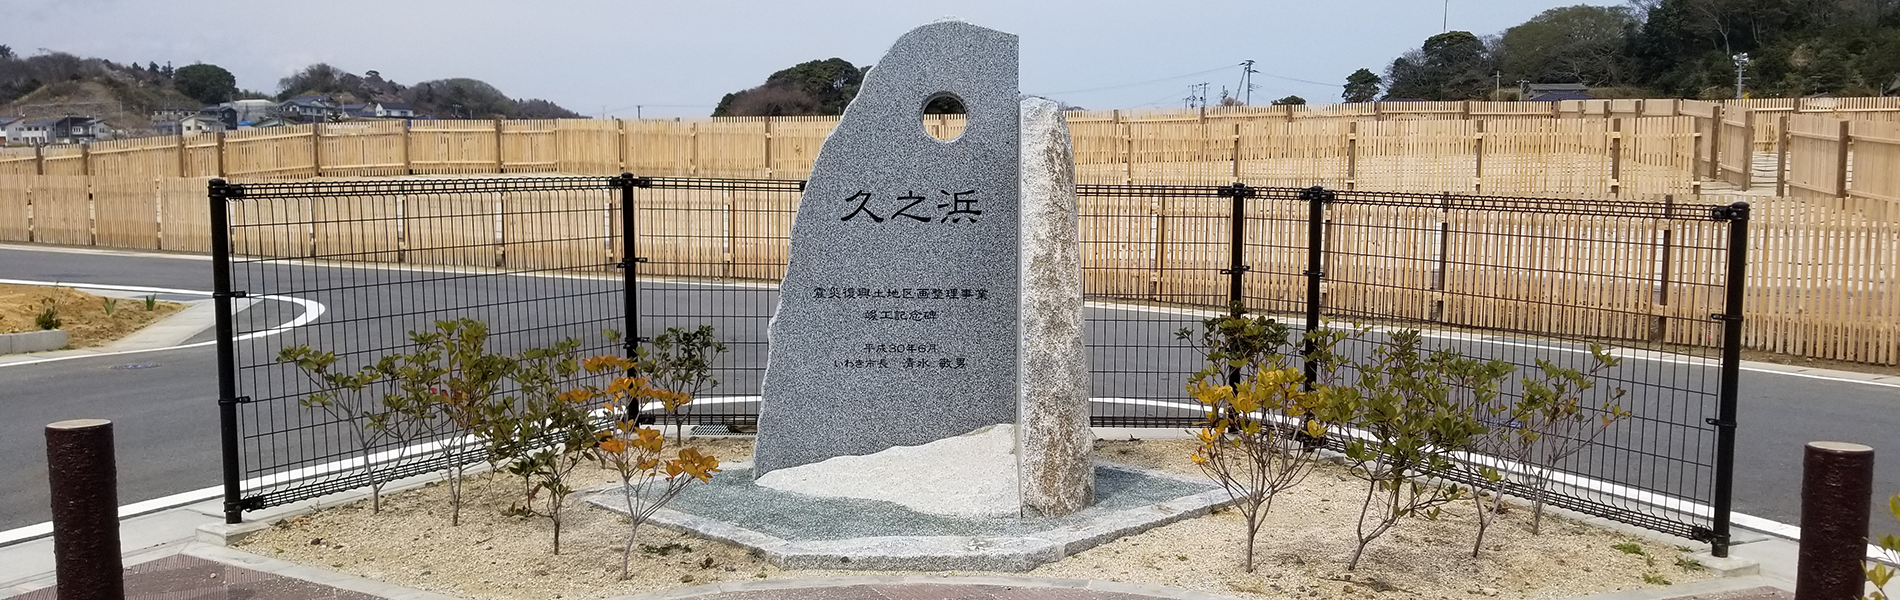 震災復興土地区画整理事業竣工記念碑設置 久ノ浜地区